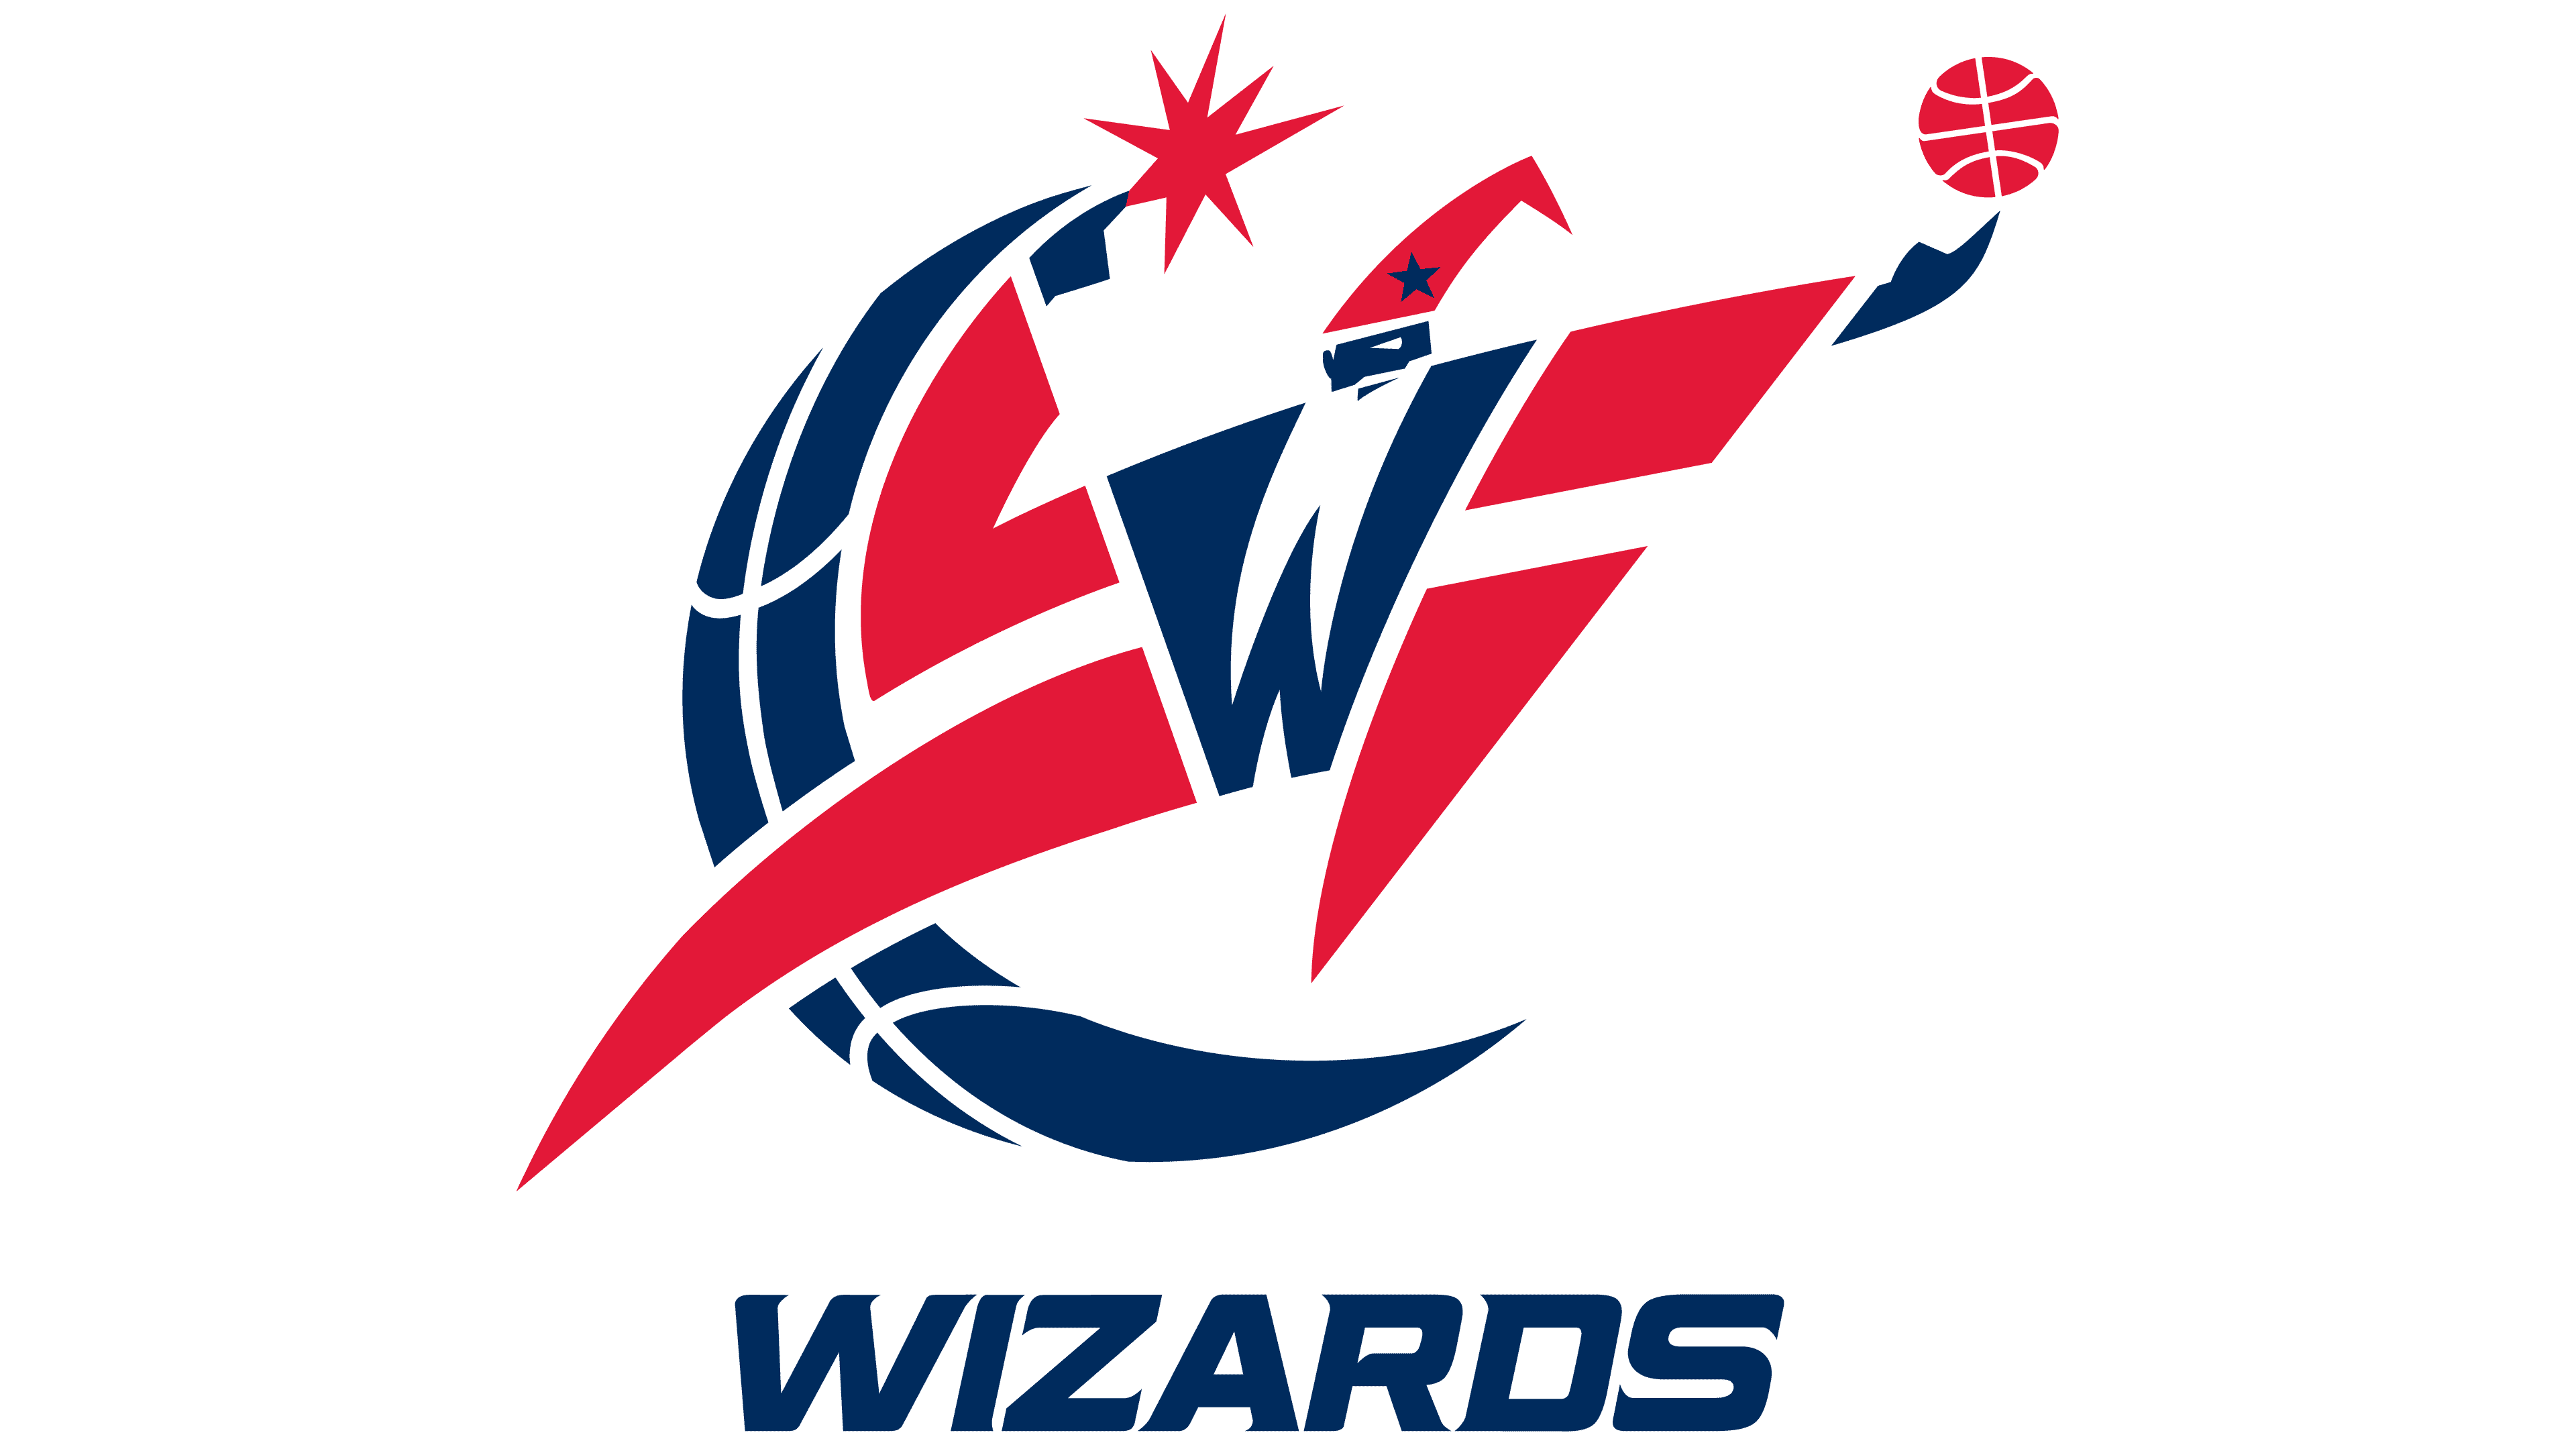 Wizard - Mascot & Esport Logo | Wizards logo, Mascot, Logo design